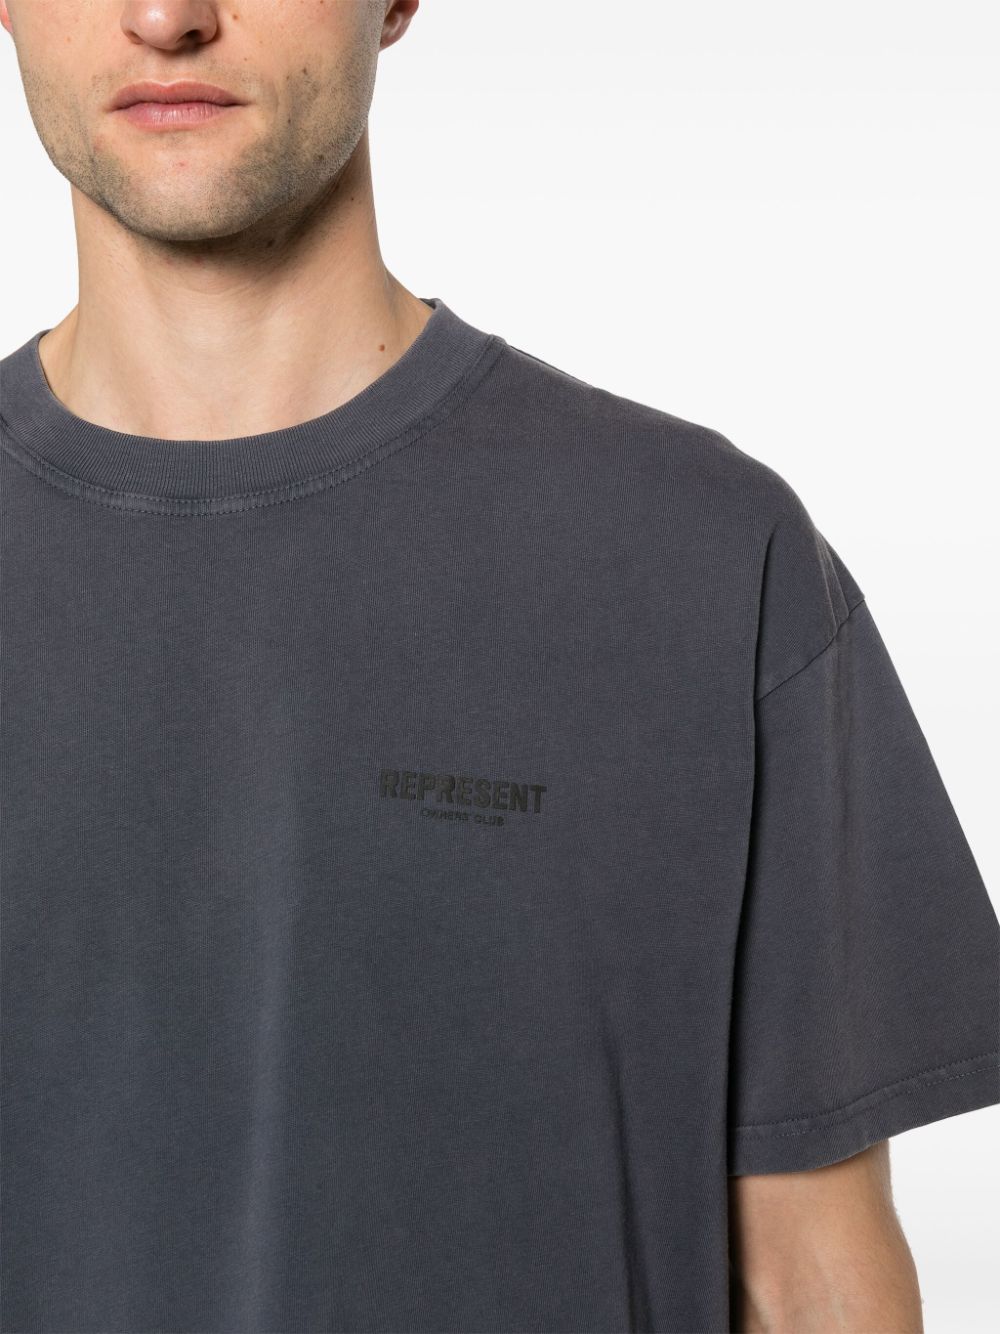 T-shirt over grigio scuro